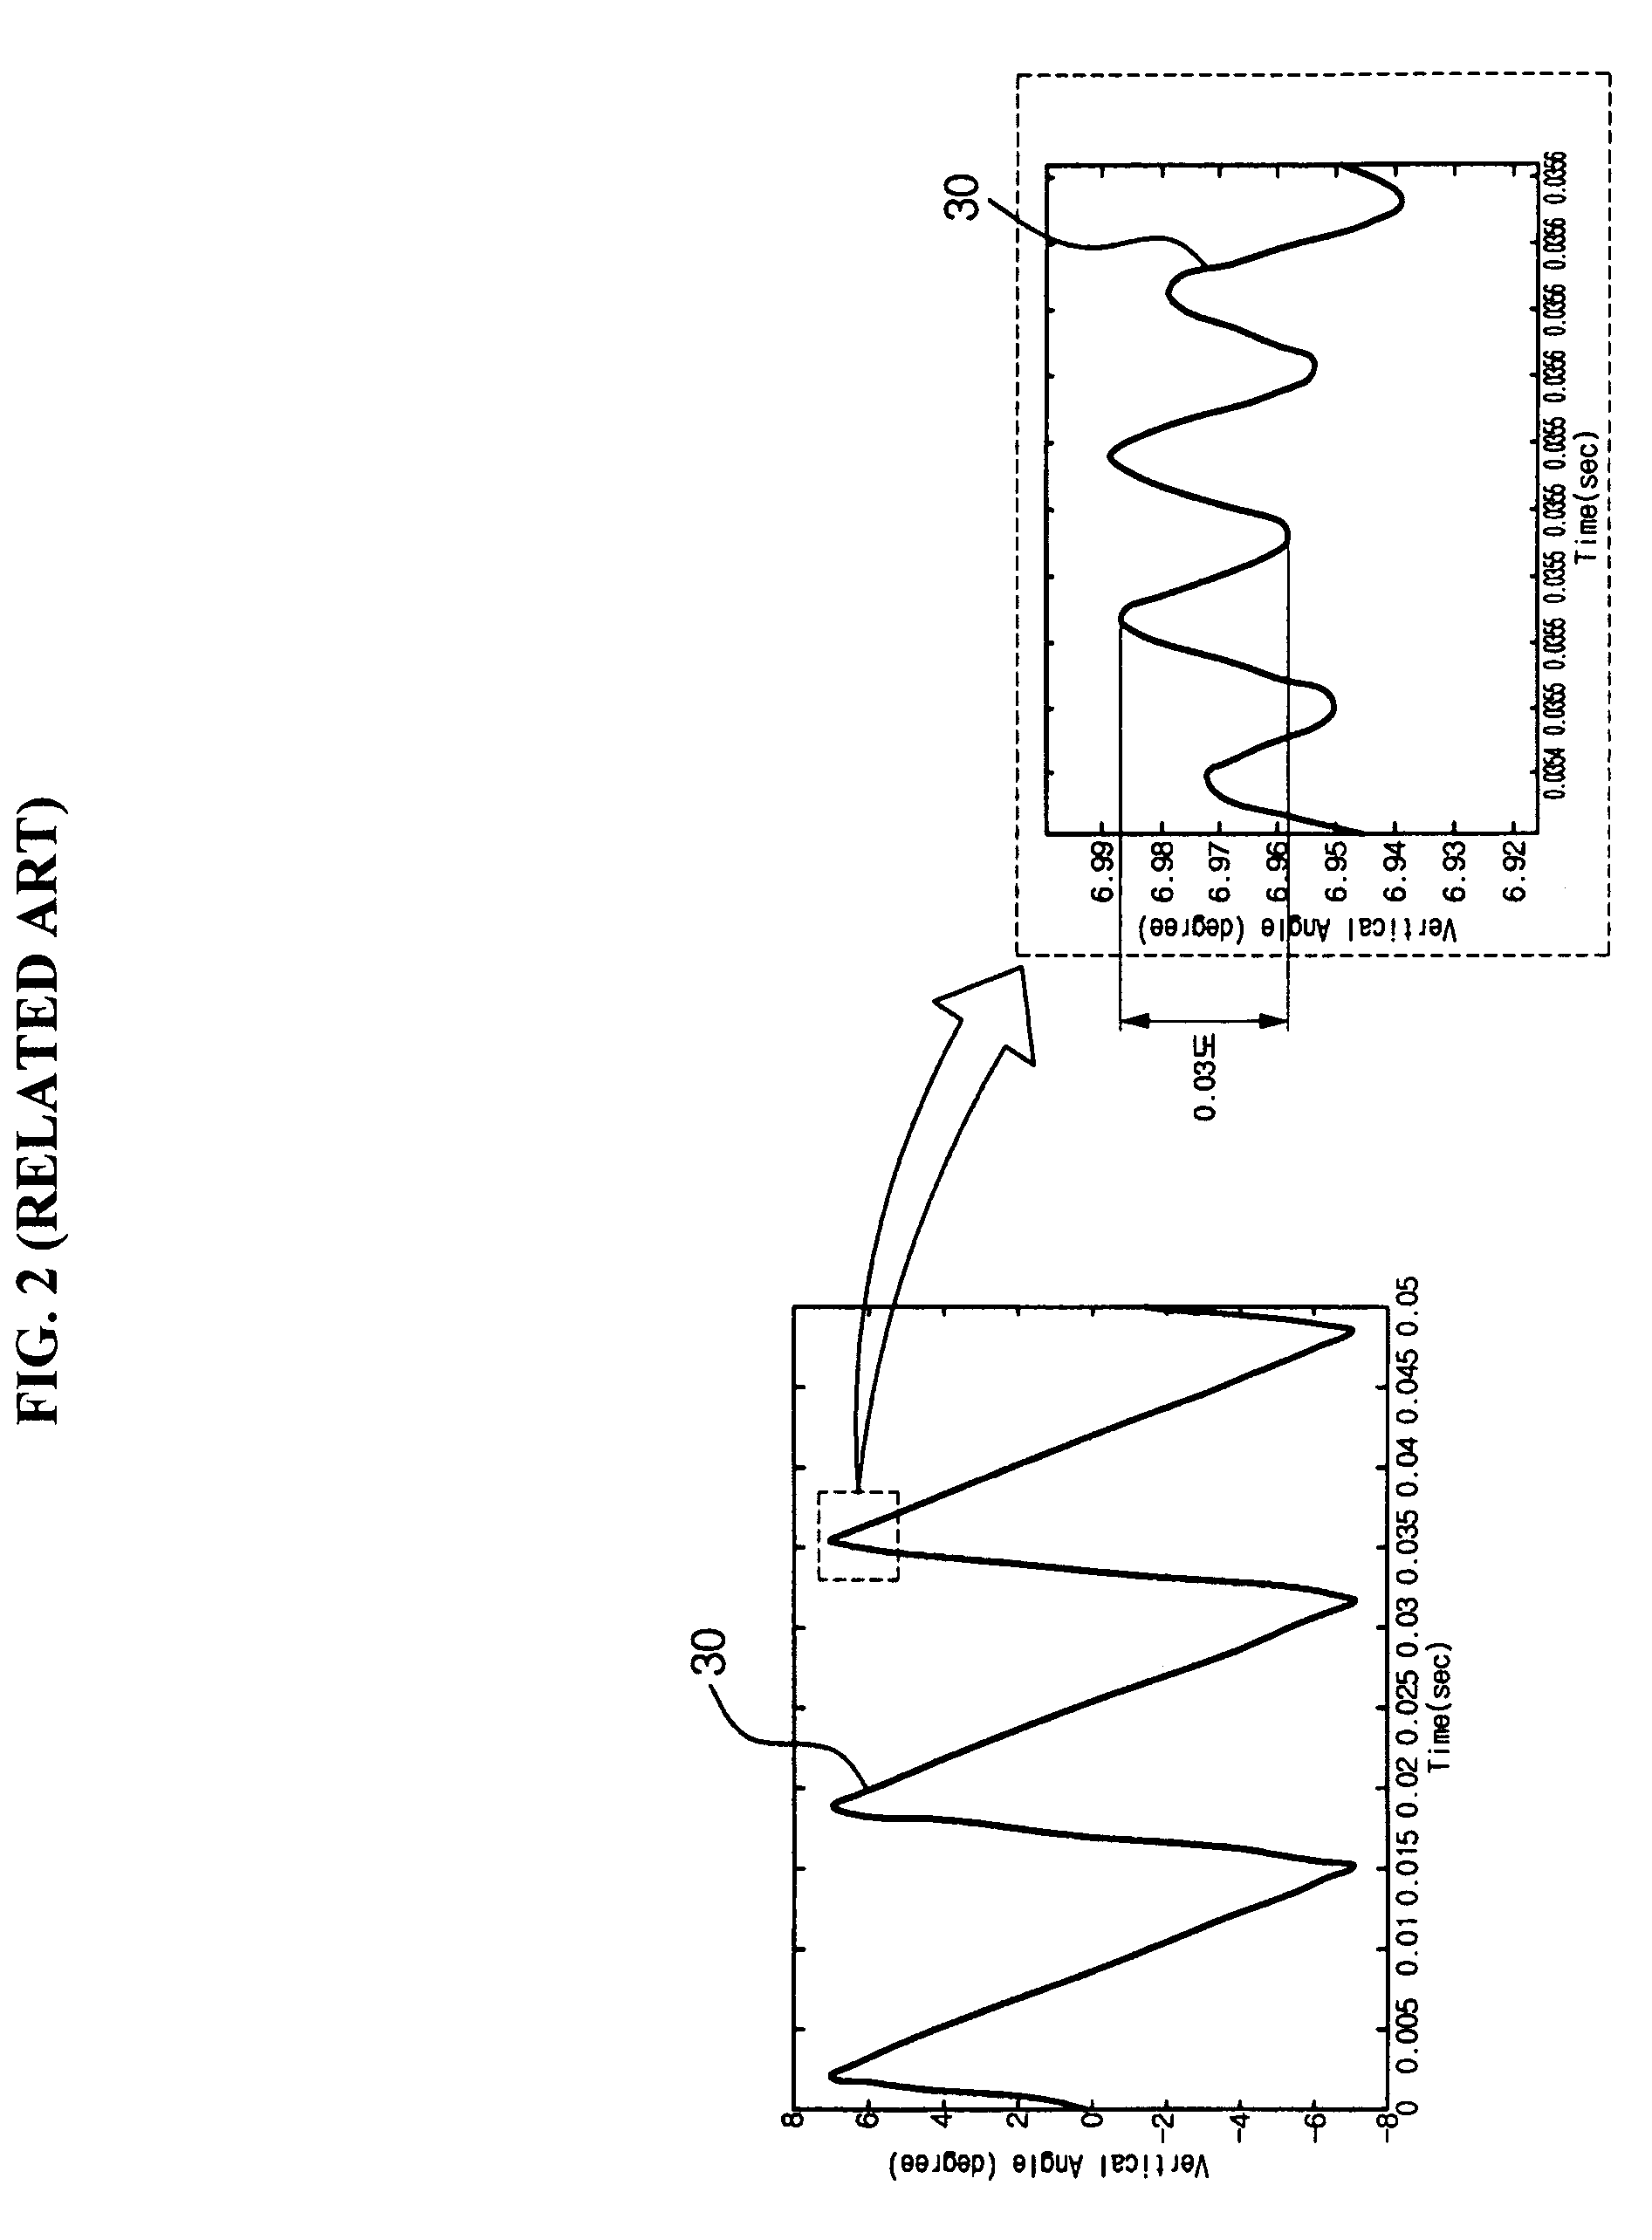 Actuator comprising mechanic filter